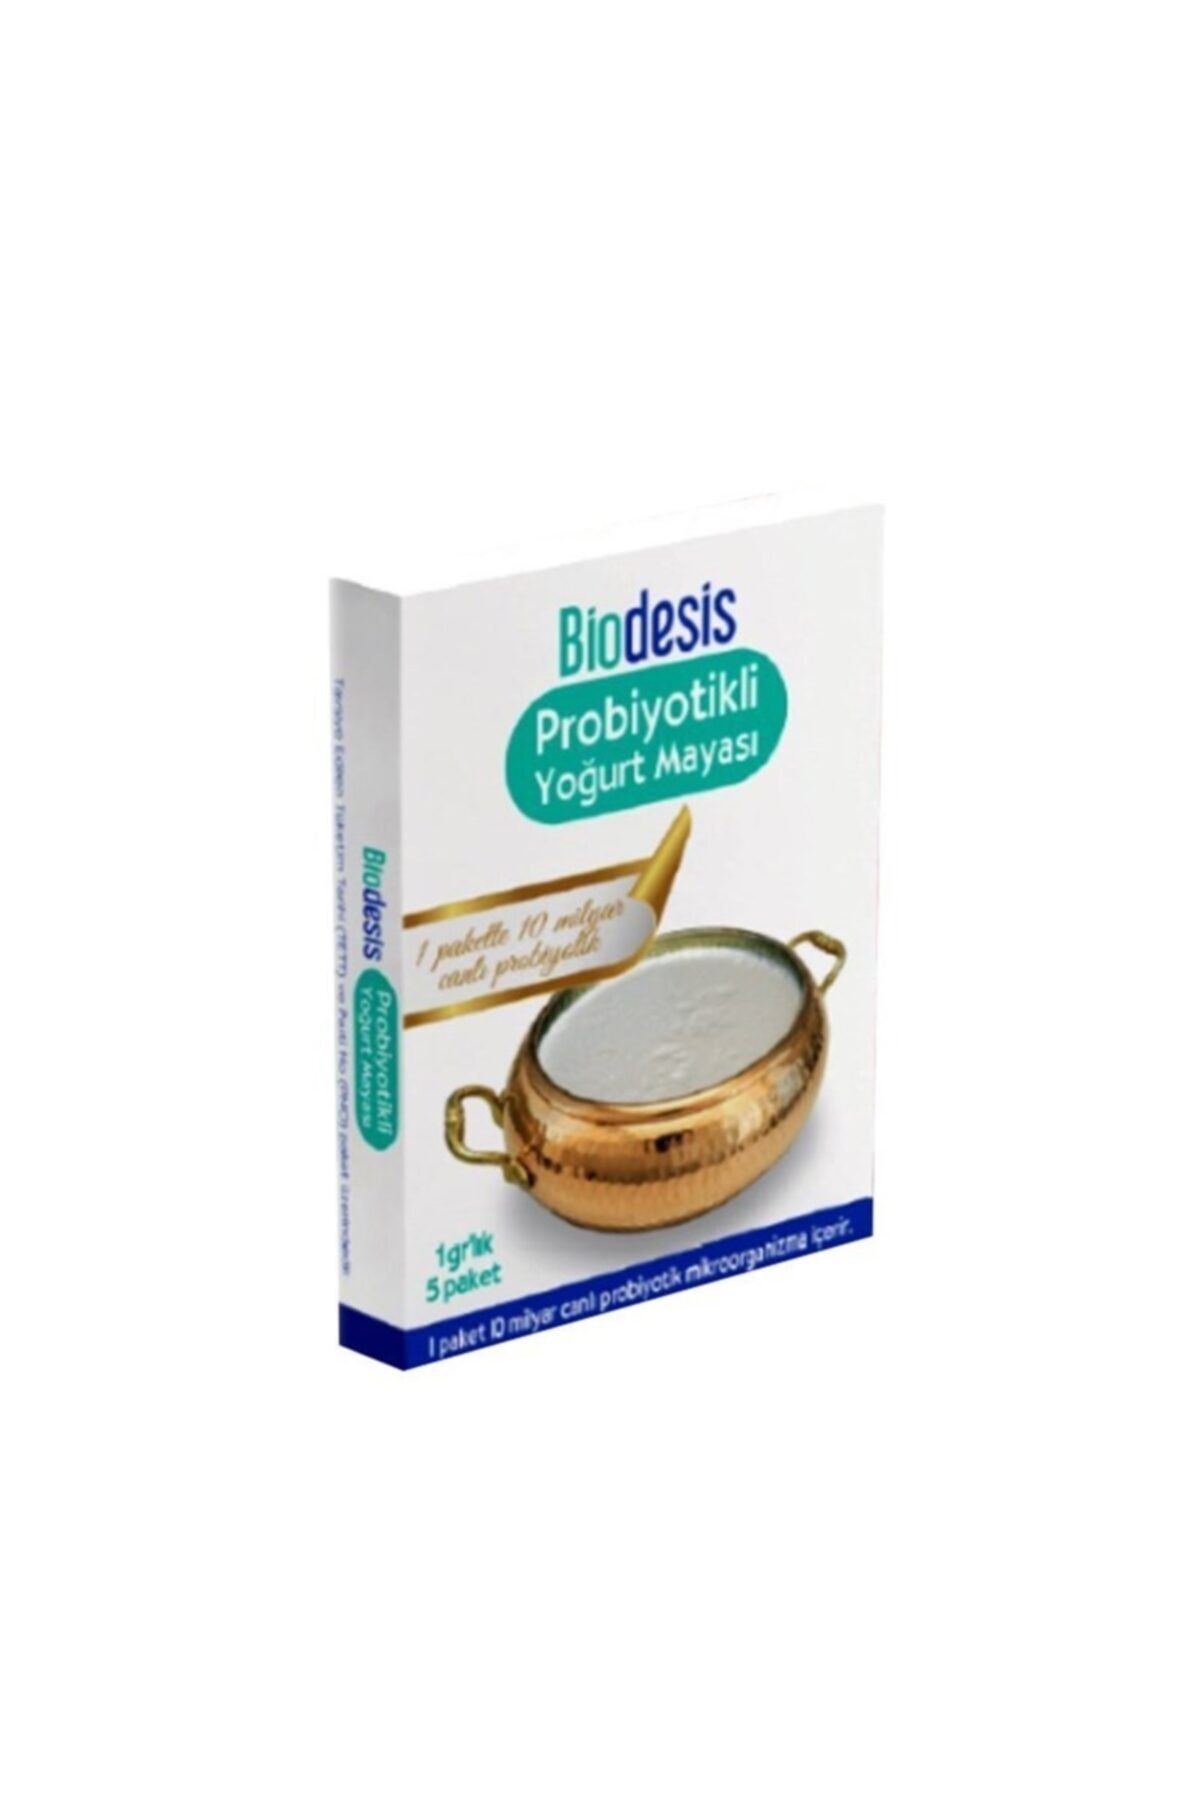 Biodesis Probiyotikli Yoğurt Mayası 1gr 5 Adet